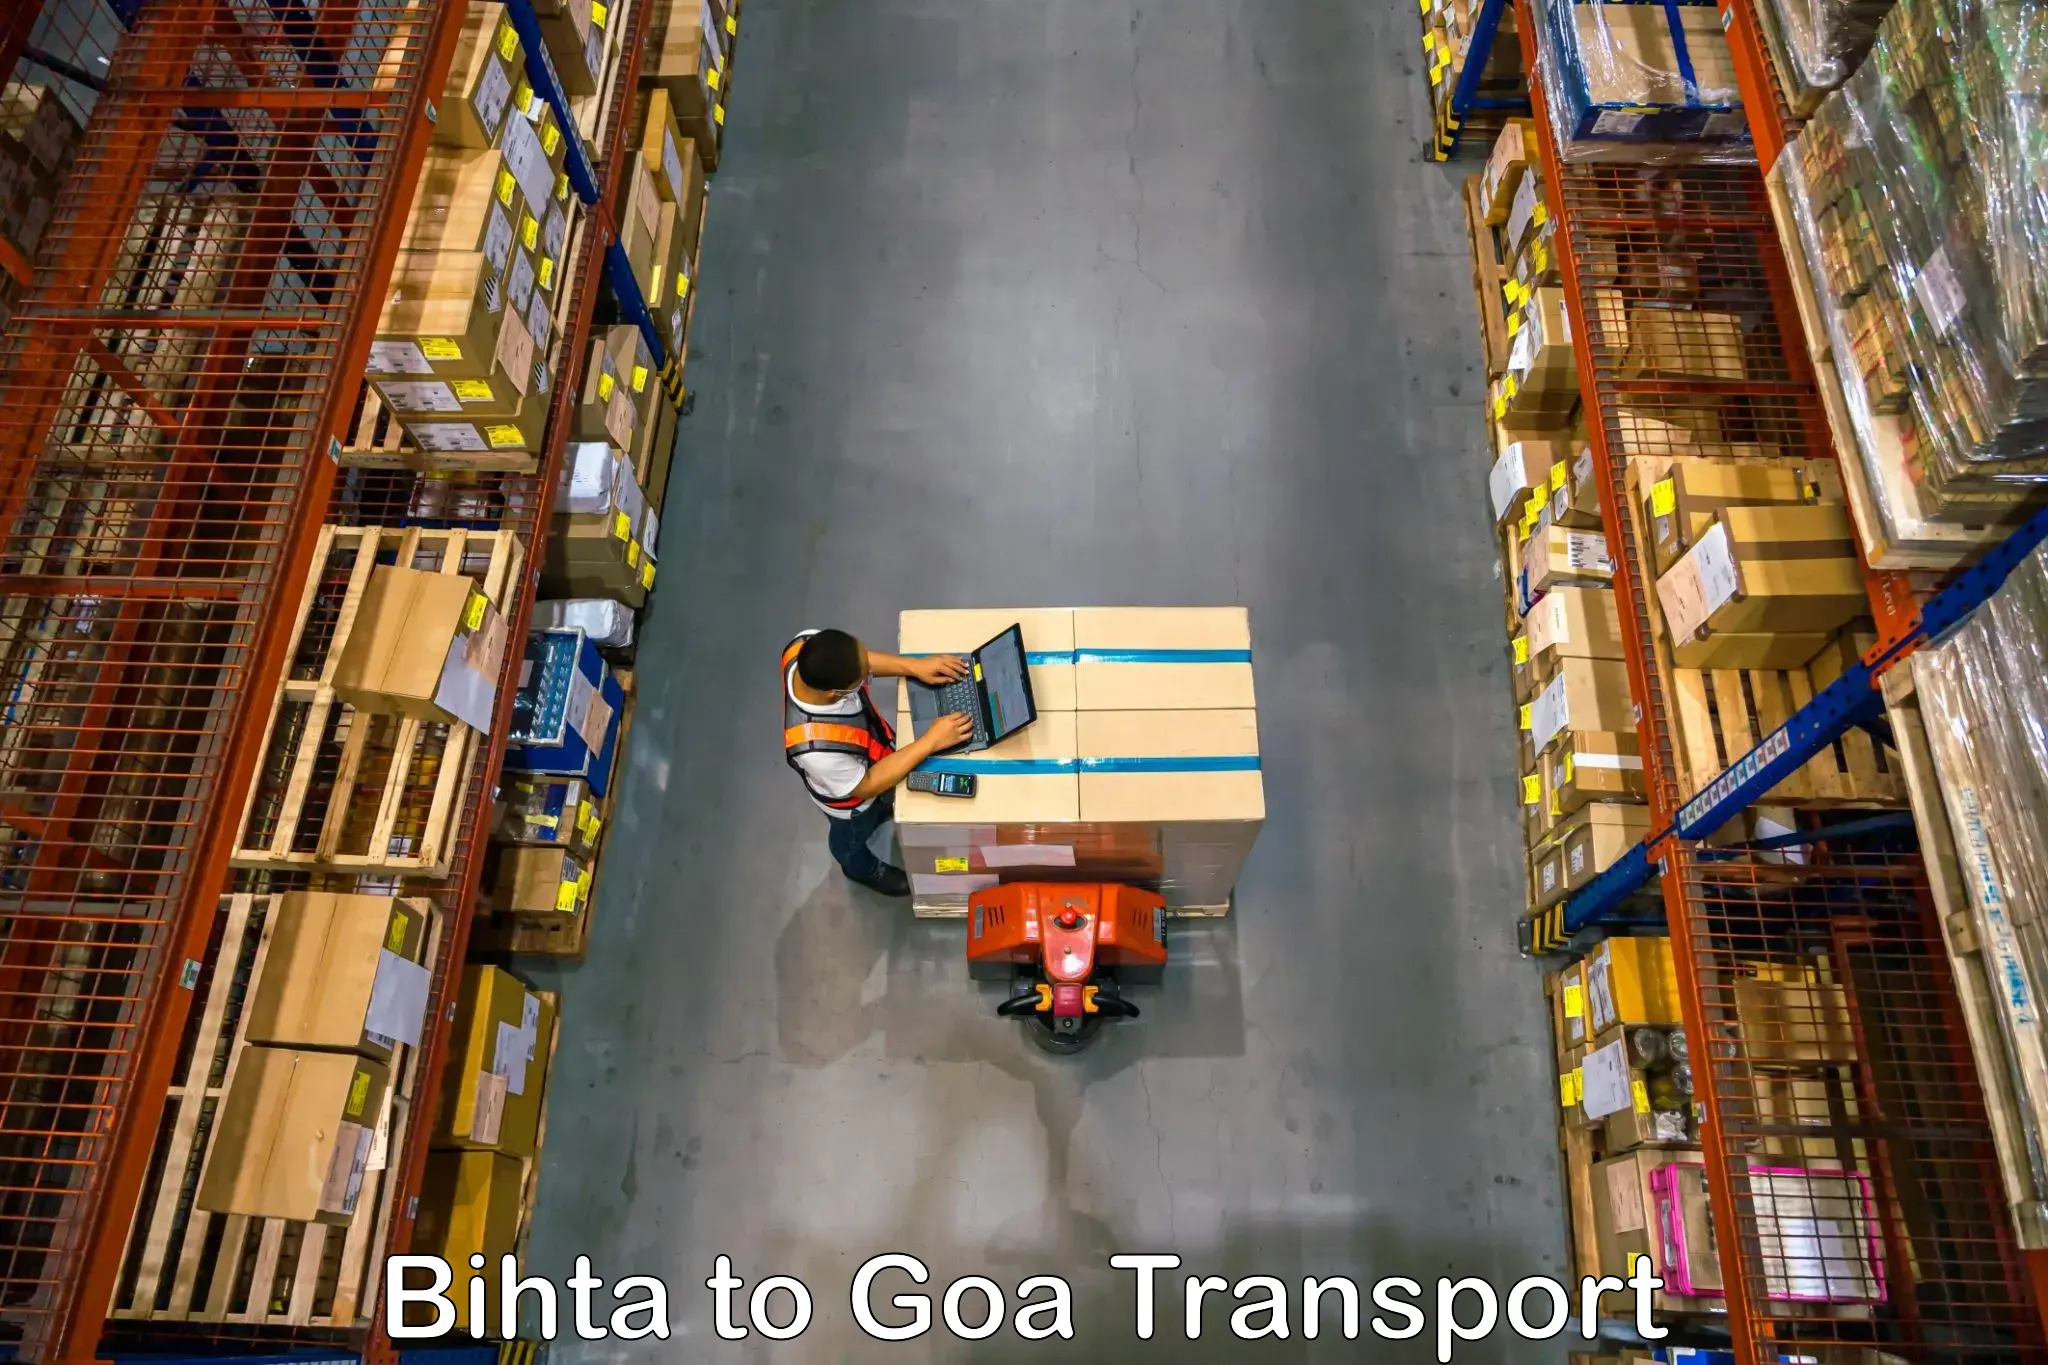 Door to door transport services in Bihta to Goa